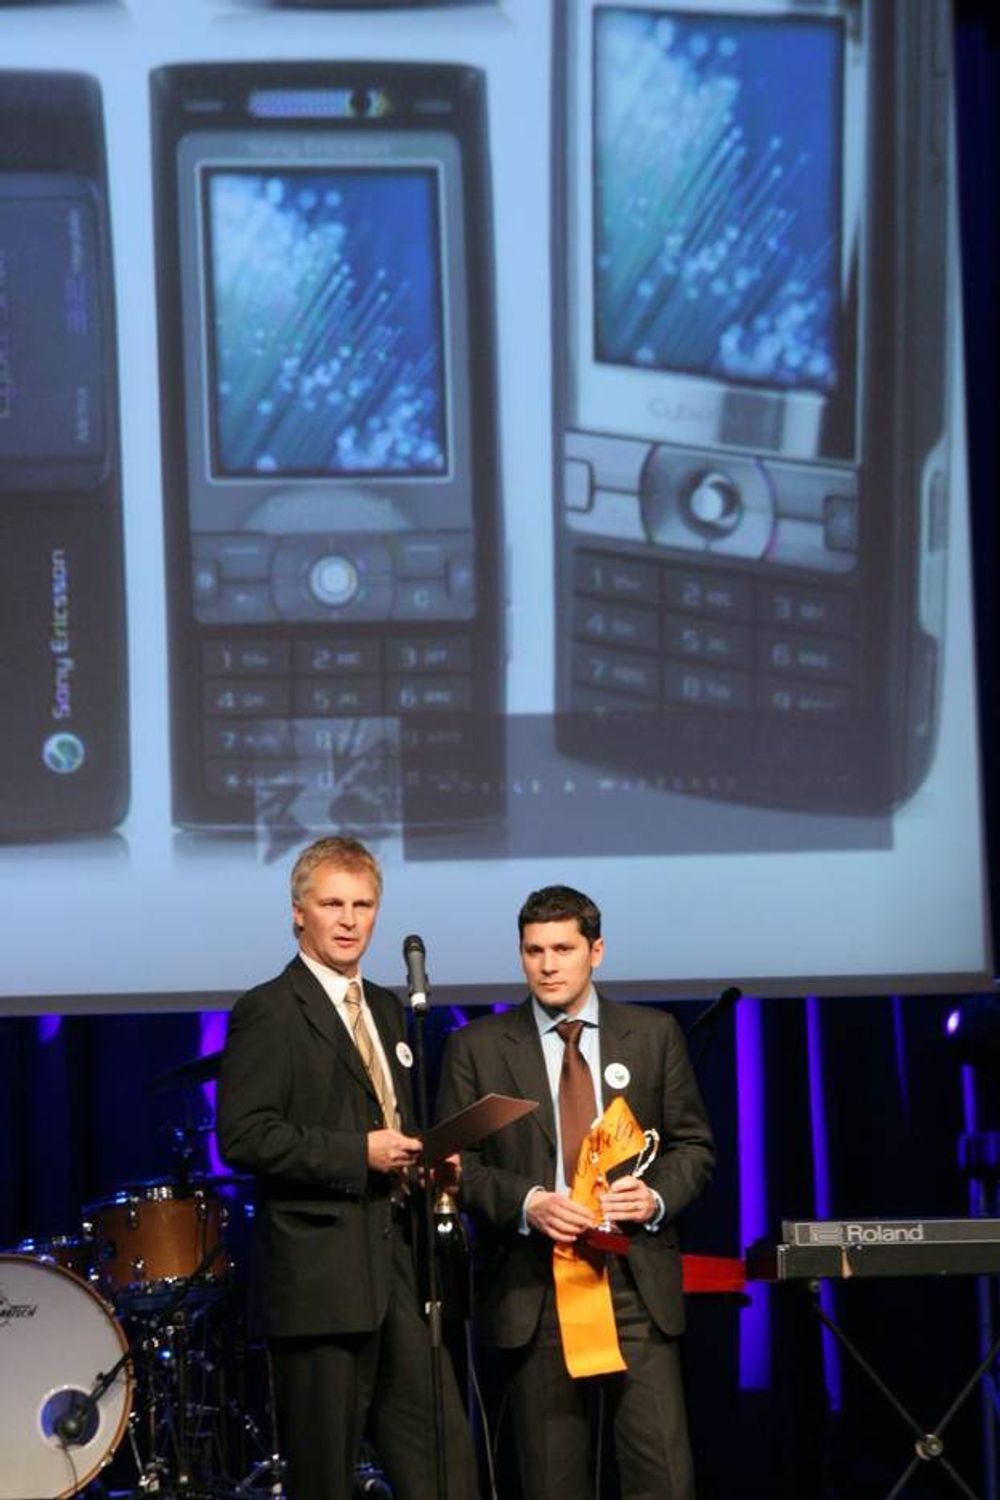 ÅRETS MOBILTELEFON: Sony Ericsson K800i 
Årets Mobil ble stemt frem av en folkejury. Mer enn 10 000 stemmer kom inn til avstemningen over hvilken mobil som er folkets favoritt.